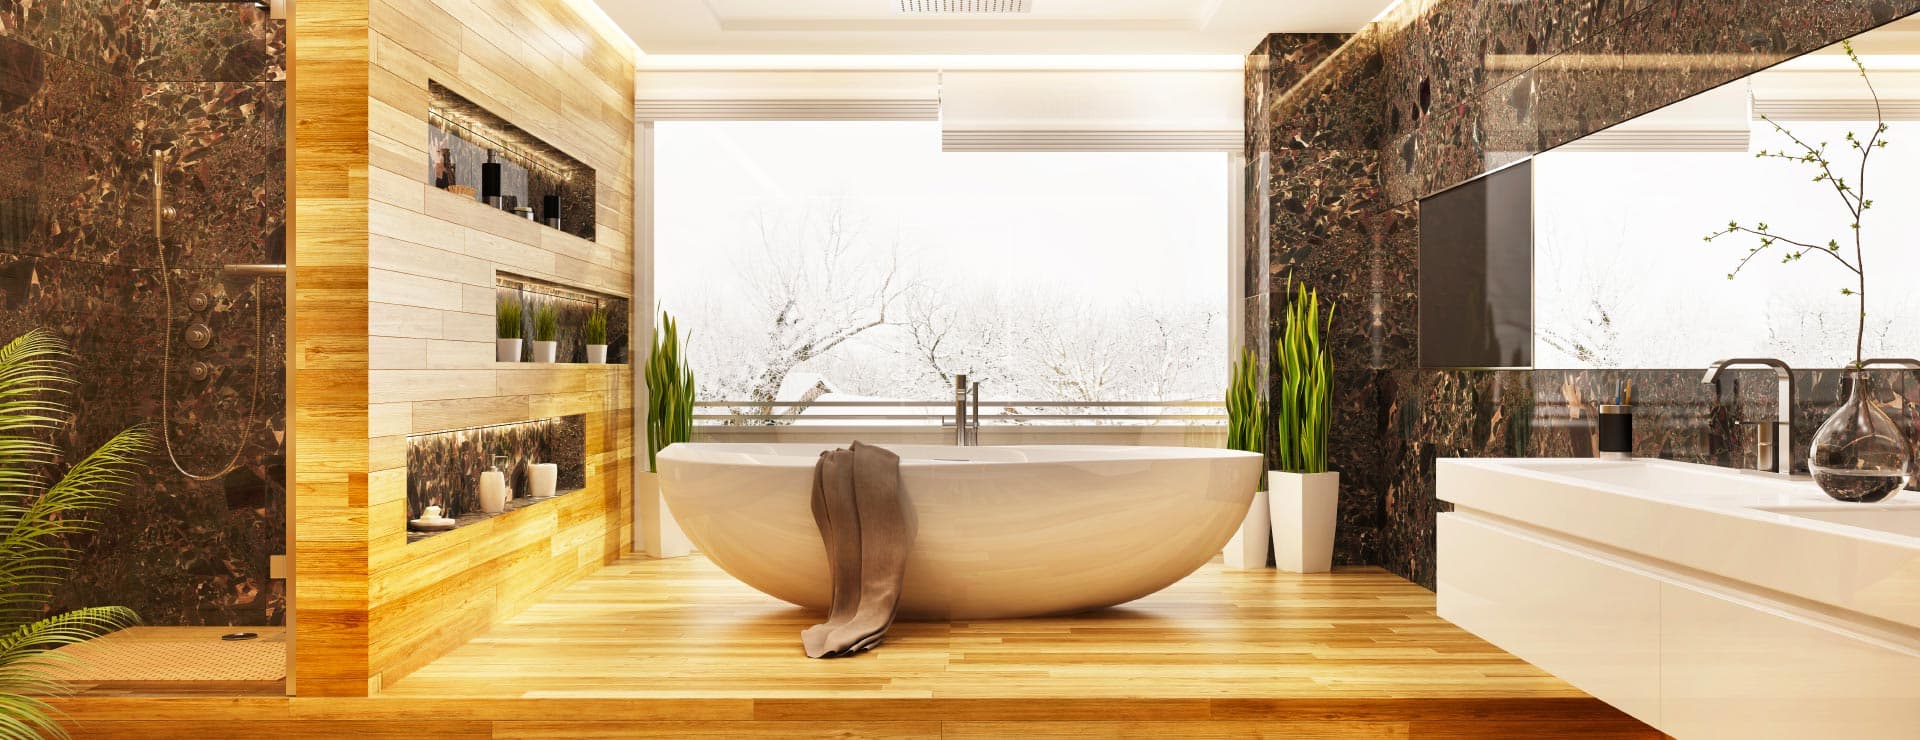 Une salle de bain moderne avec une grande baignoire et un sol en bois